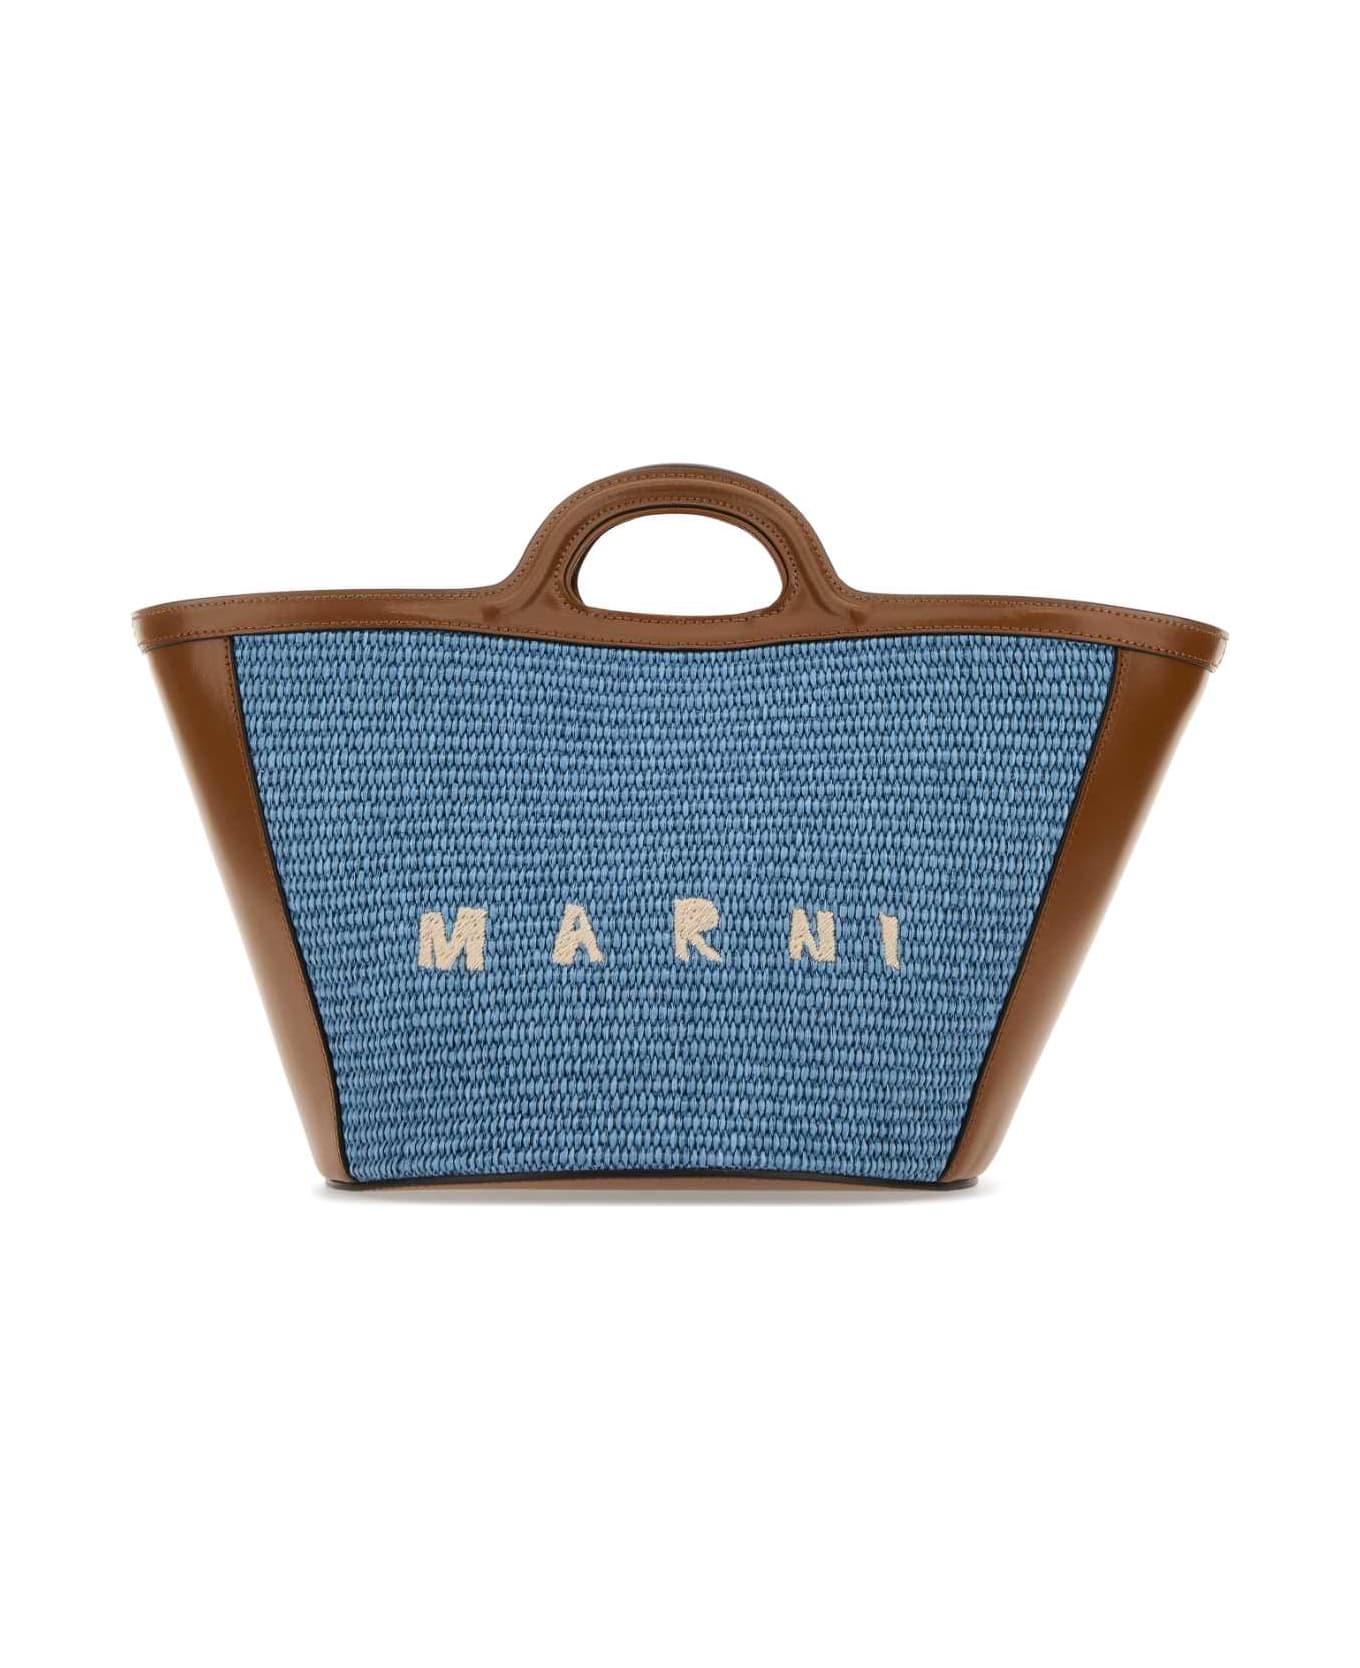 Marni Multicolor Leather And Raffia Small Tropicalia Summer Handbag - ZO751 トートバッグ